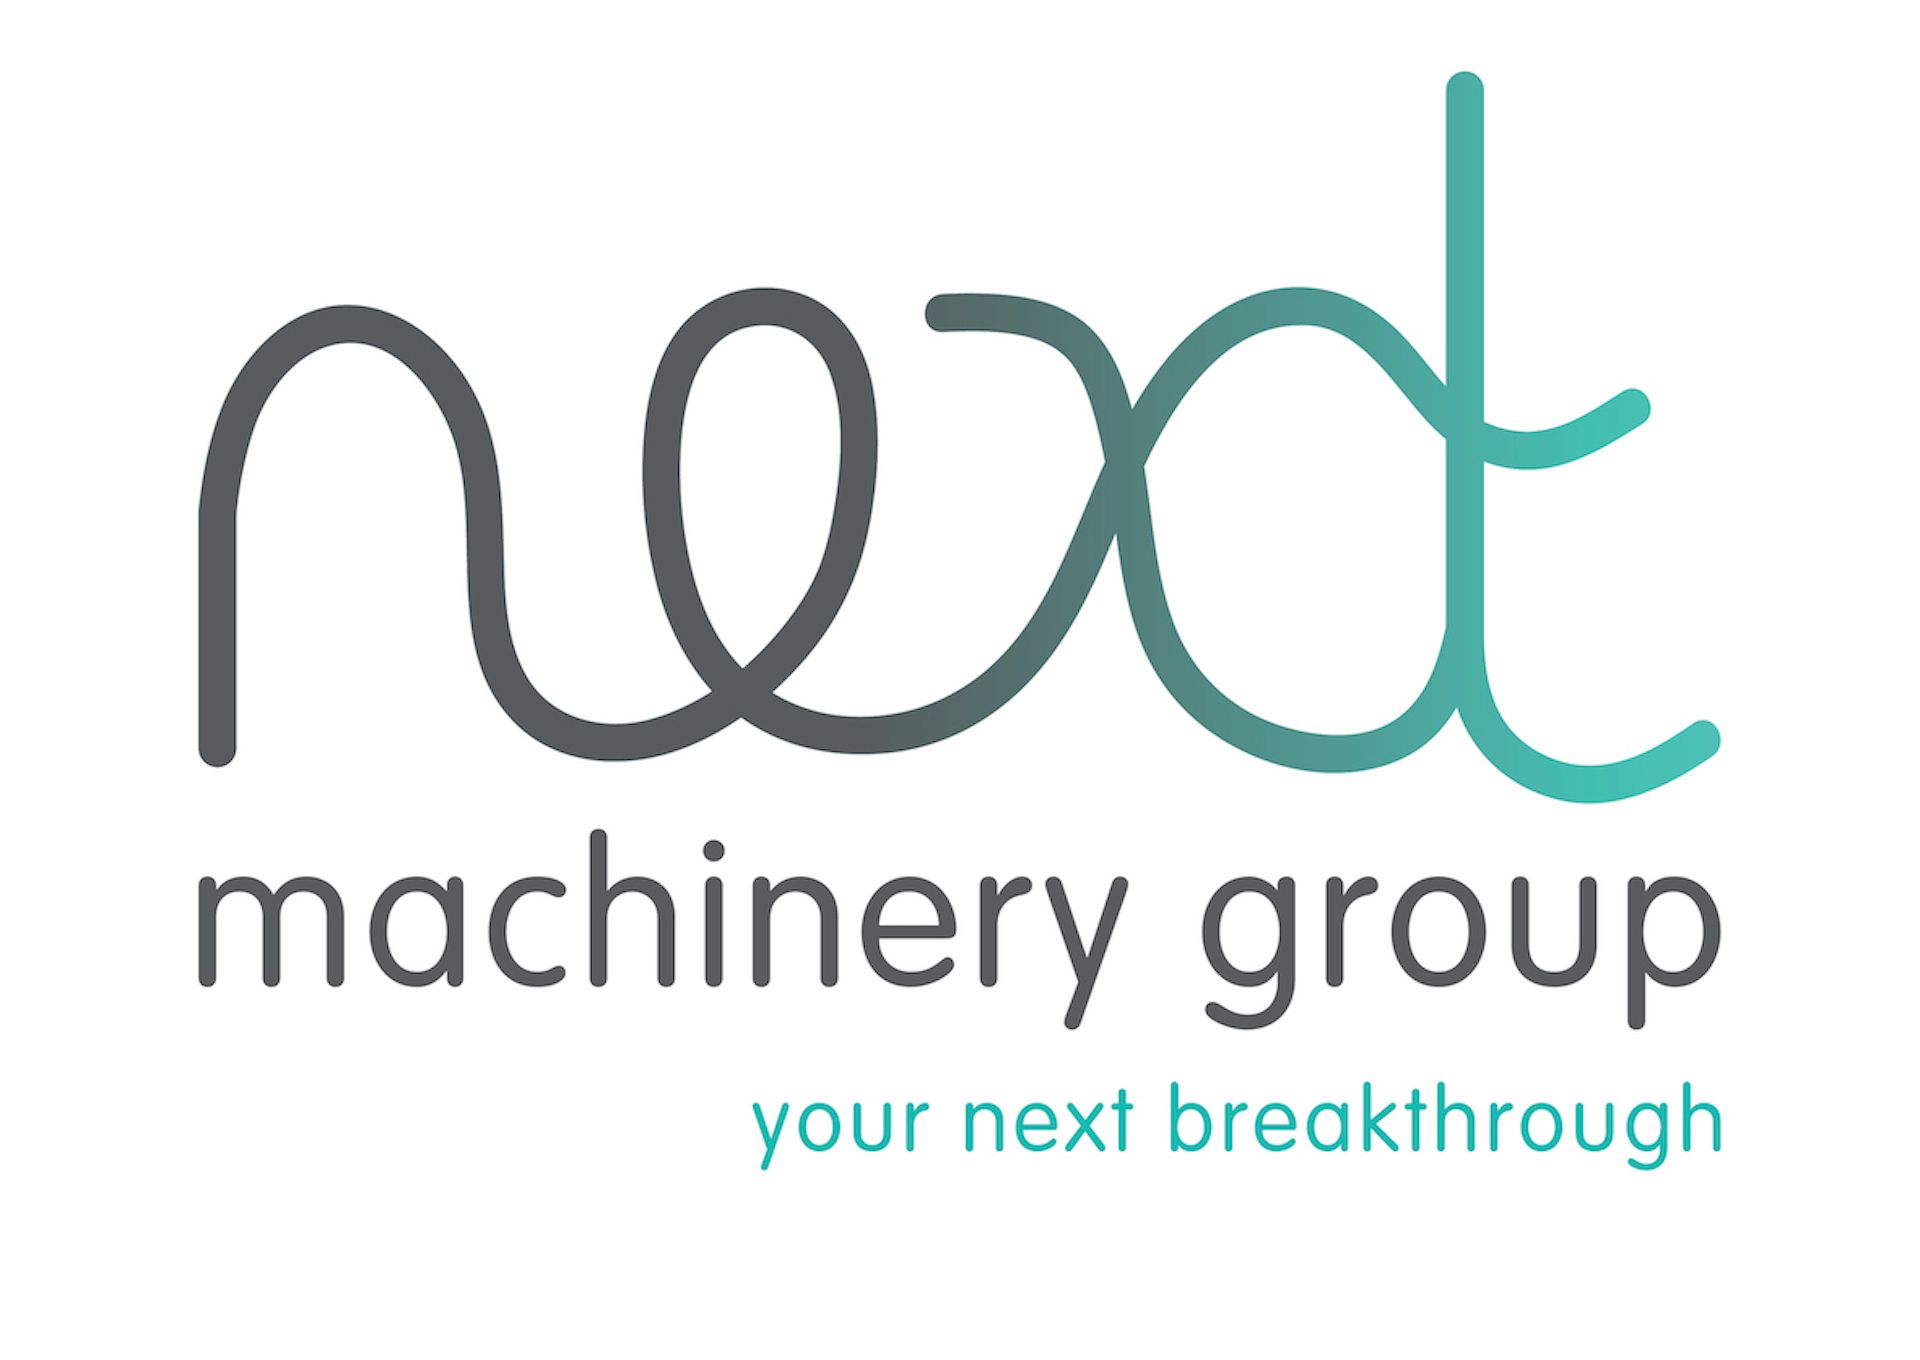 Next Machinery Group